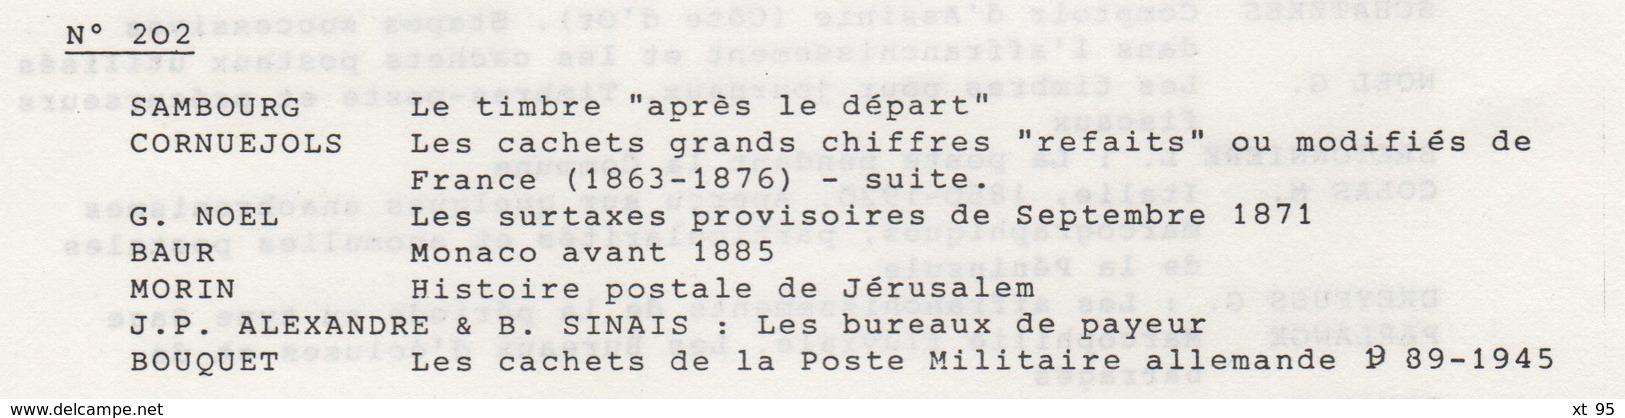 Les Feuilles Marcophiles - N°202 - Voir Sommaire - Frais De Port 2€ - Filatelie En Postgeschiedenis